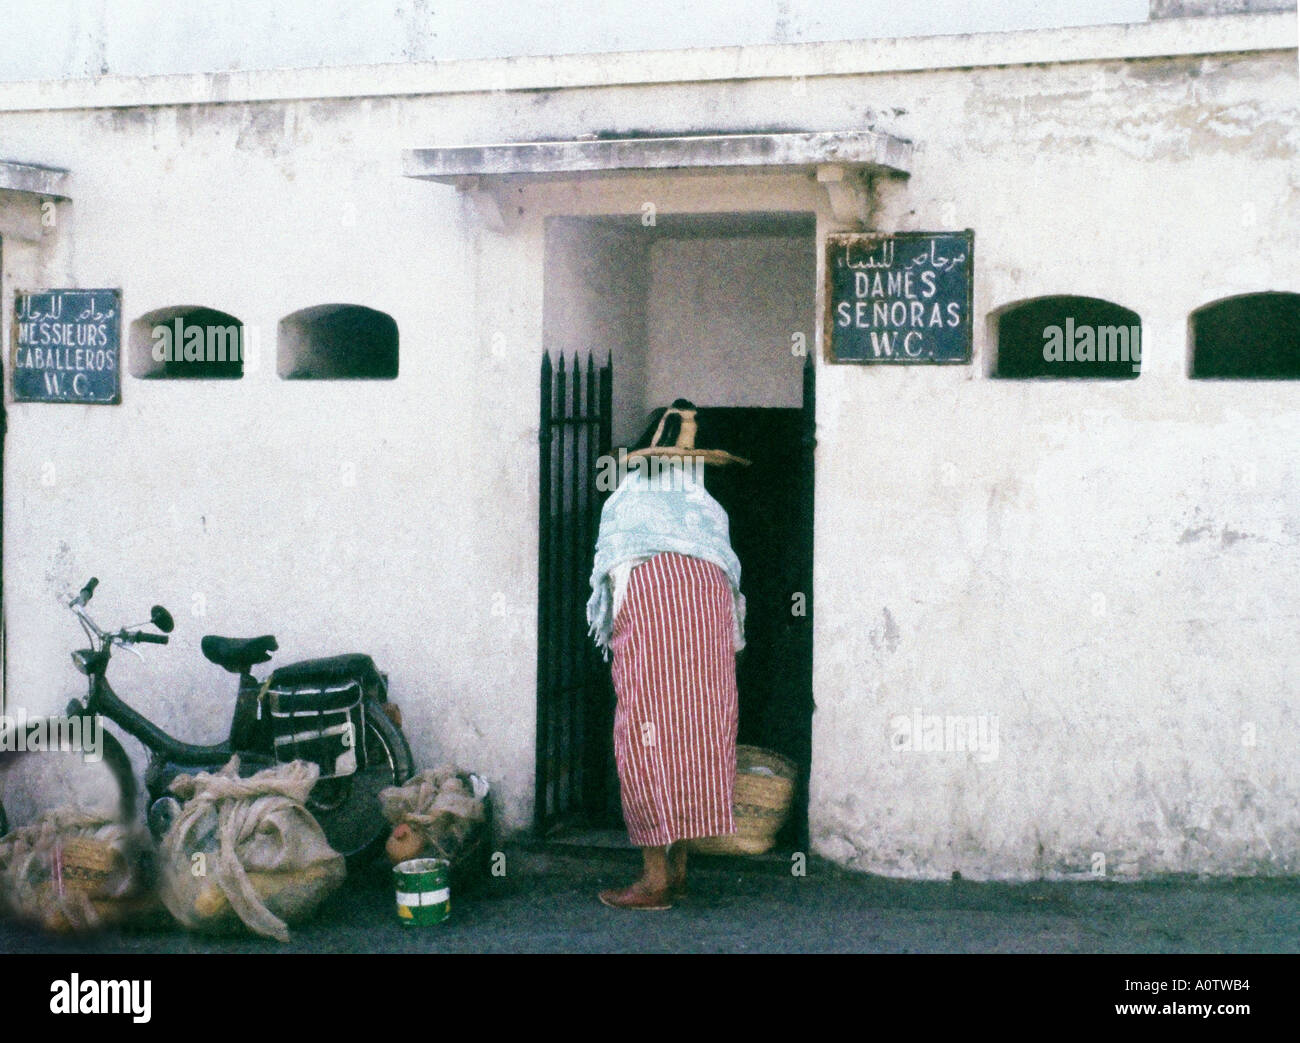 Afrique MAROC TANGER Berbère marocaine femme en costume traditionnel d'entrer les femmes s toilette publique, des signes en Arabe Français Banque D'Images